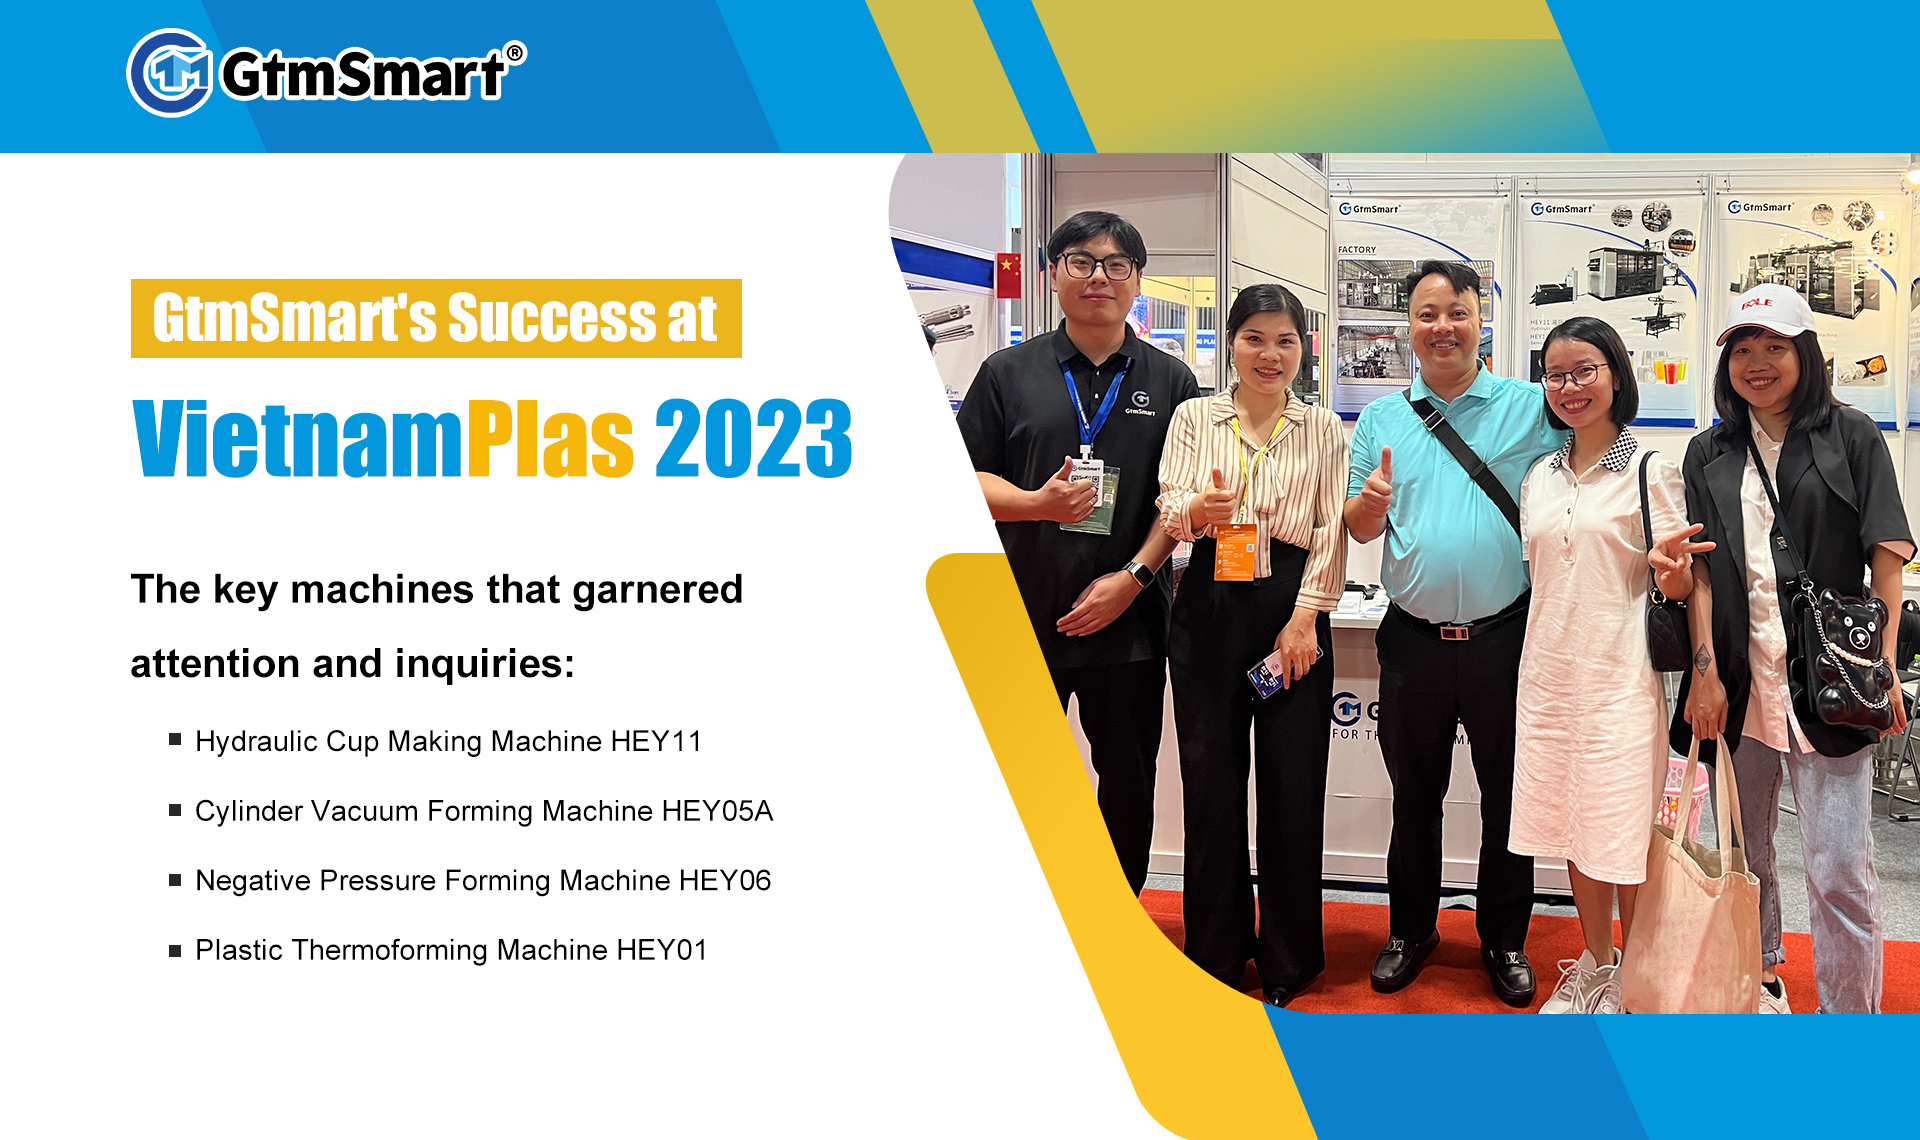 Der Erfolg von GtmSmart auf der VietnamPlas 2023